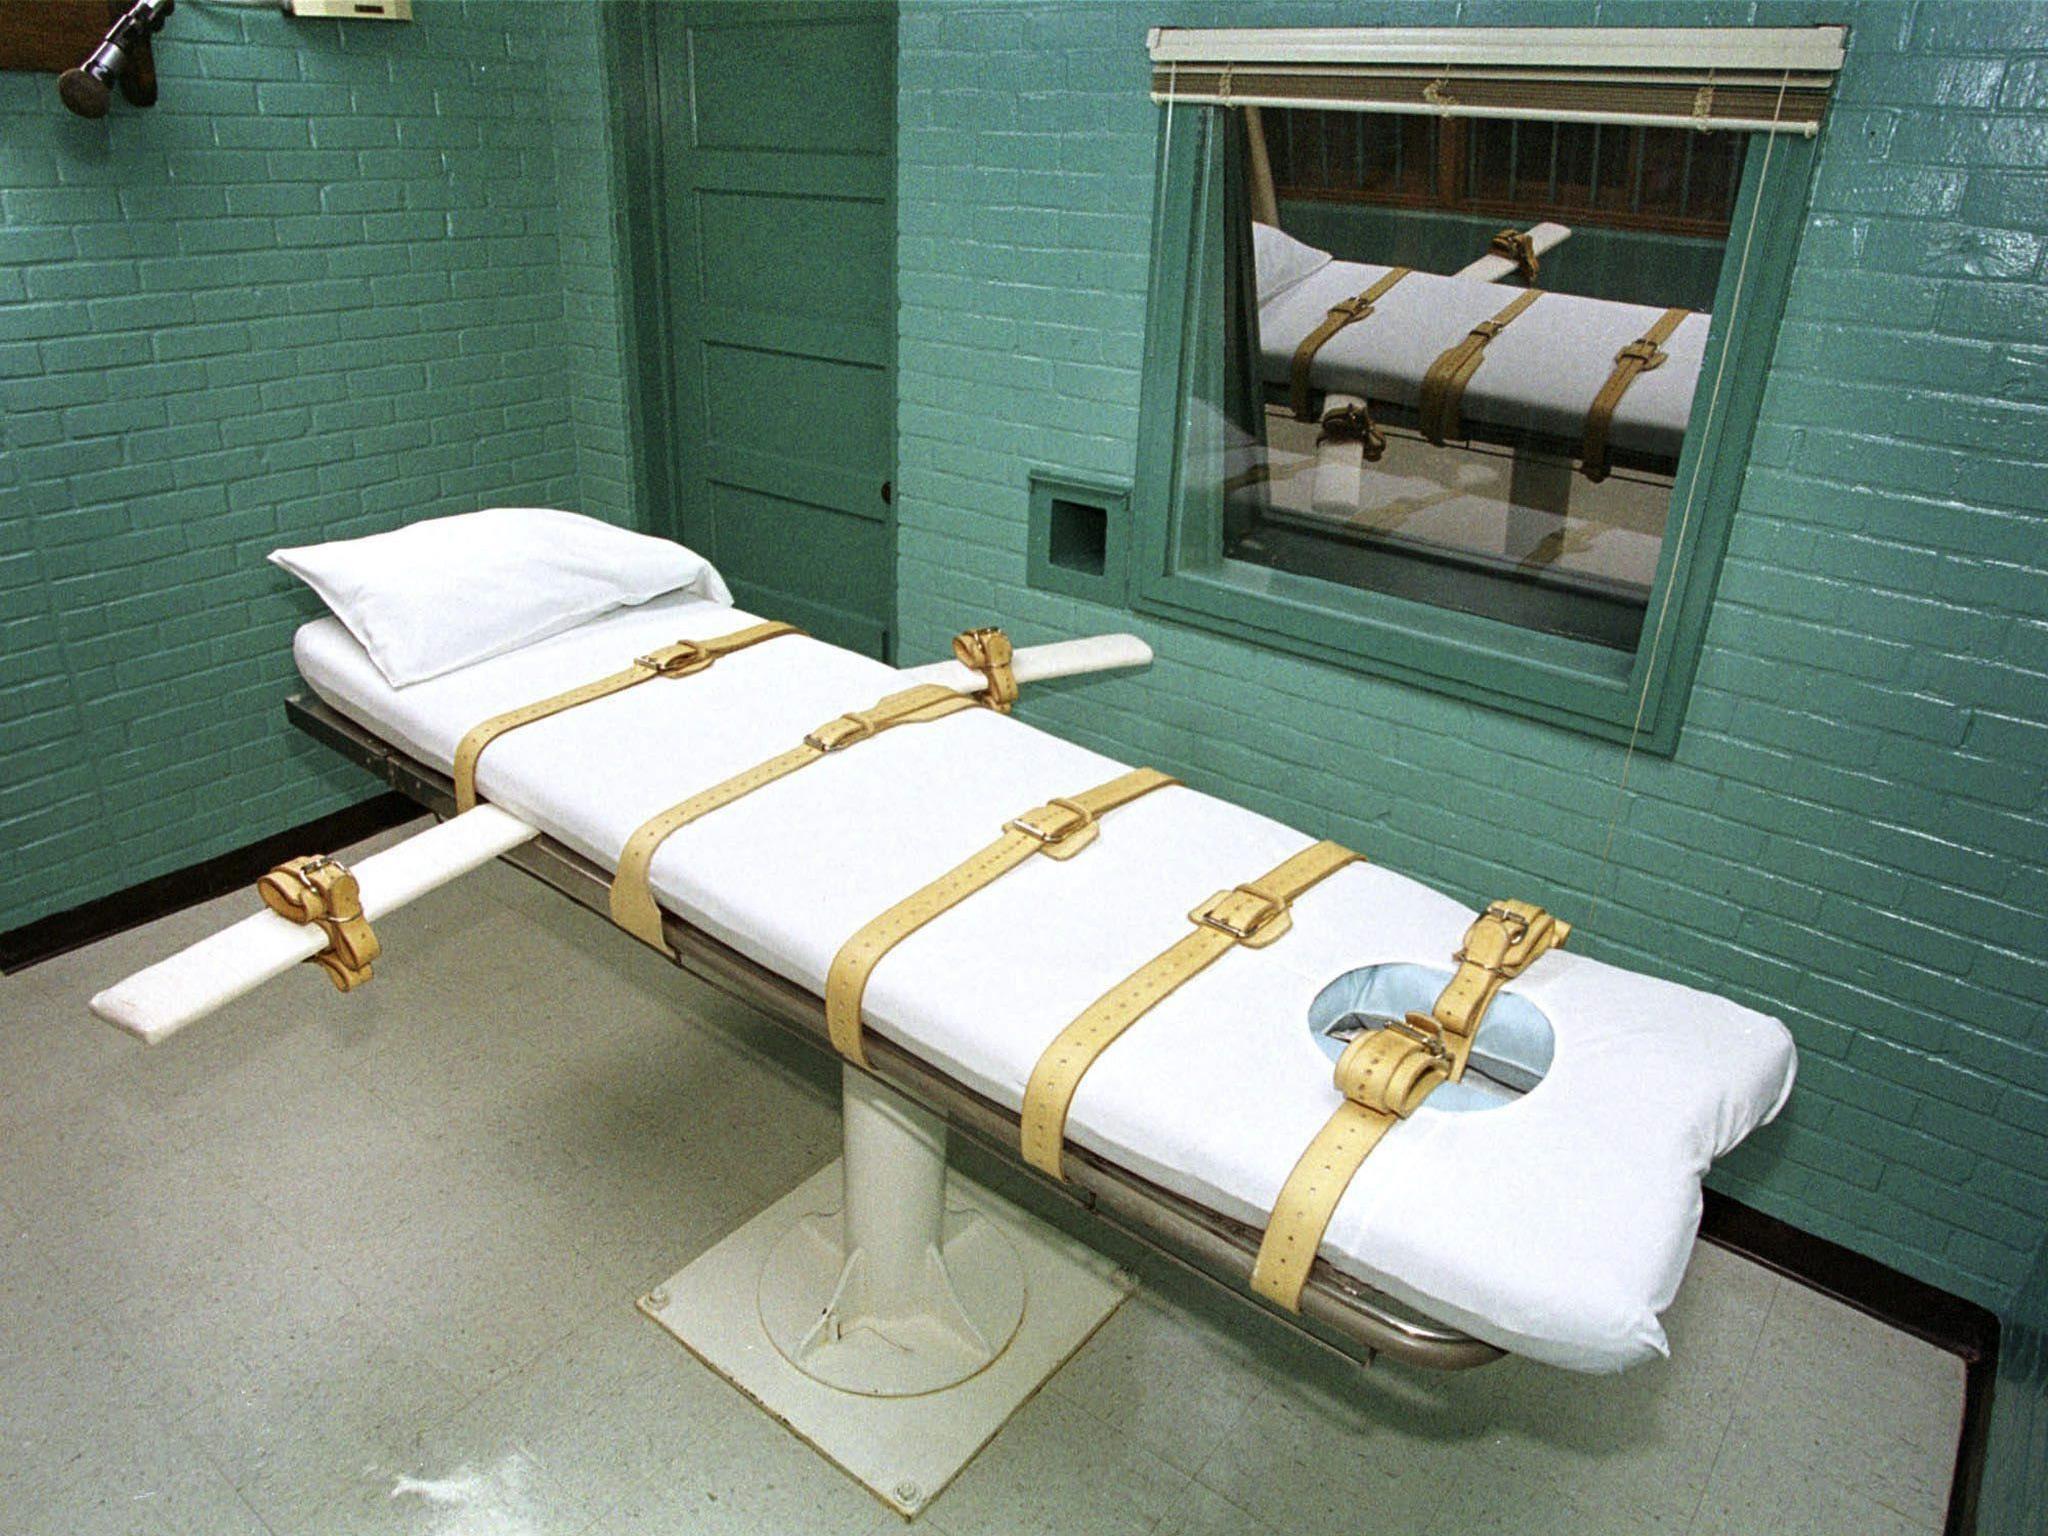 Der Raum für die Hinrichtungen in Huntsville, Texas.